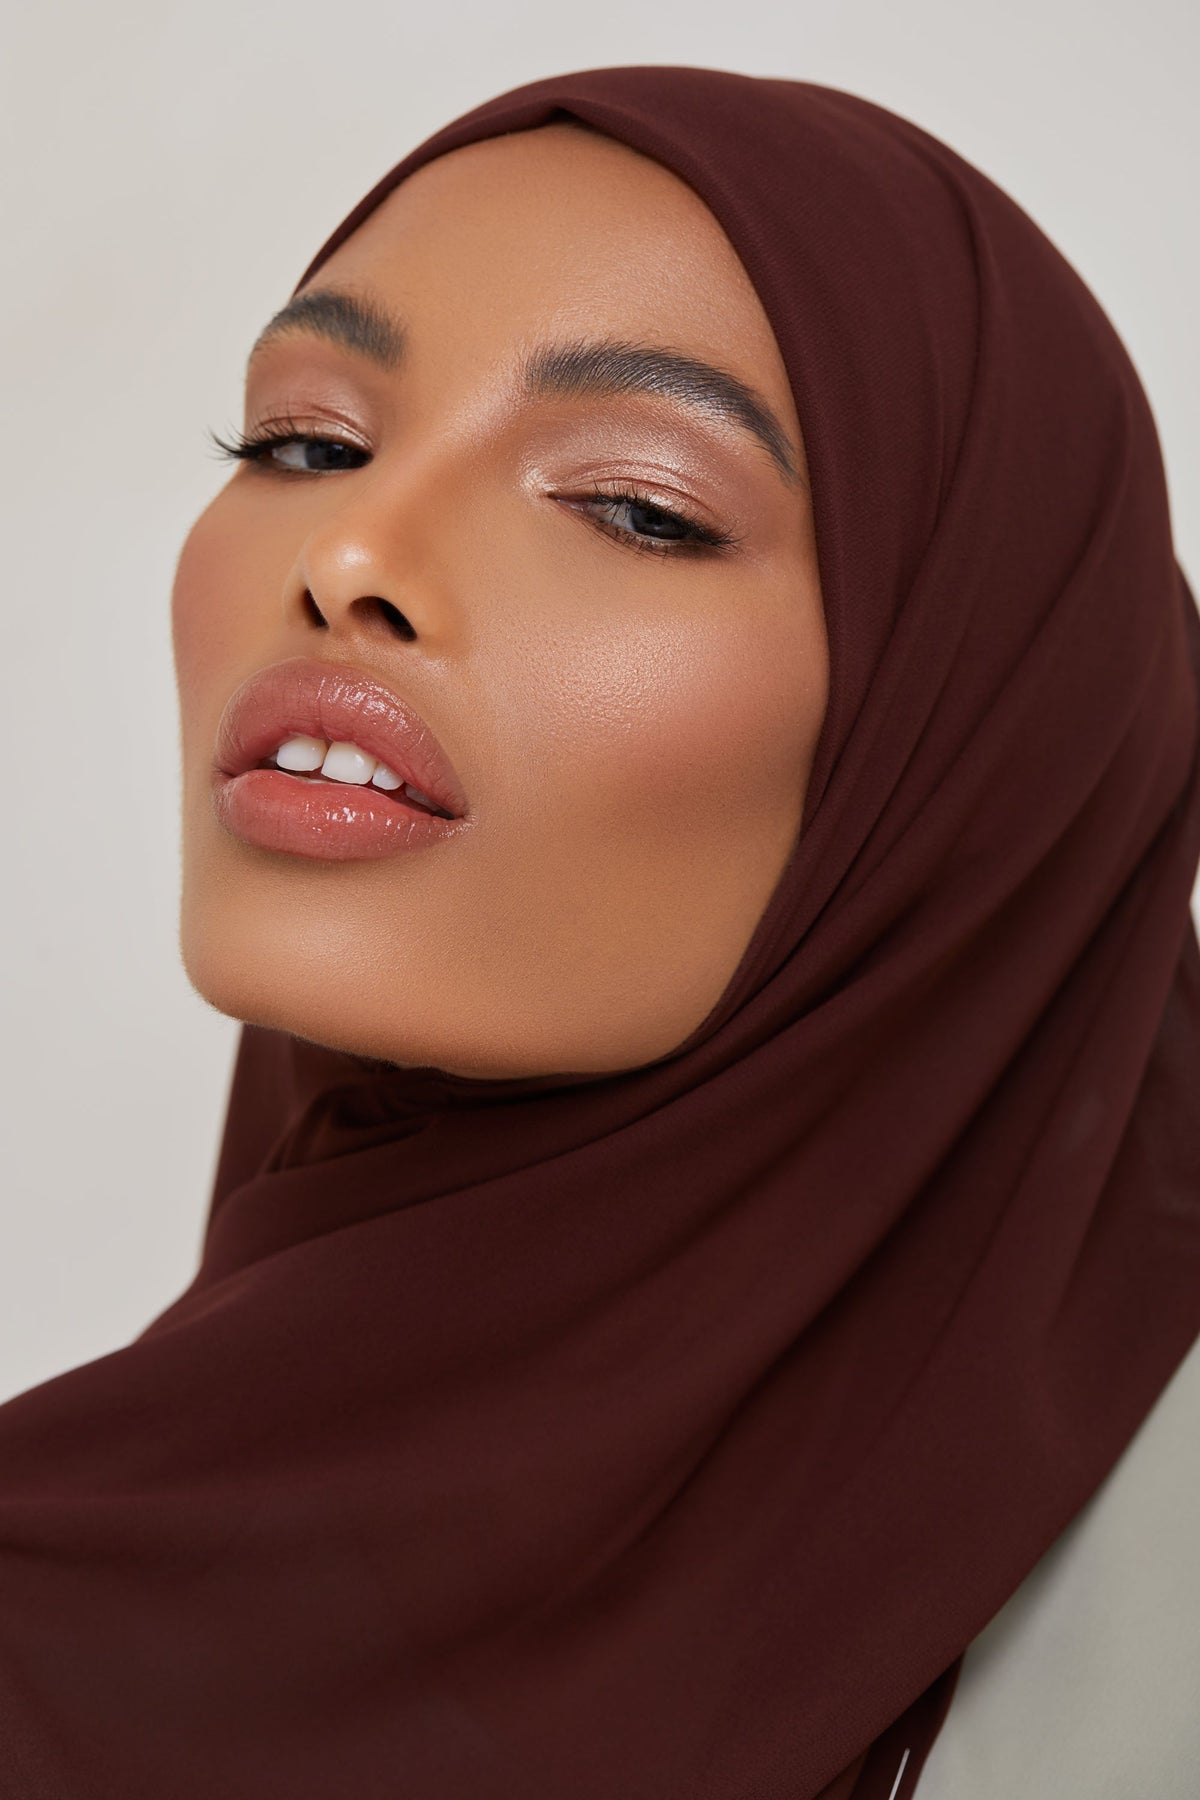 Essential Chiffon Hijab - Chocolate Brown Scarves & Shawls epschoolboard 